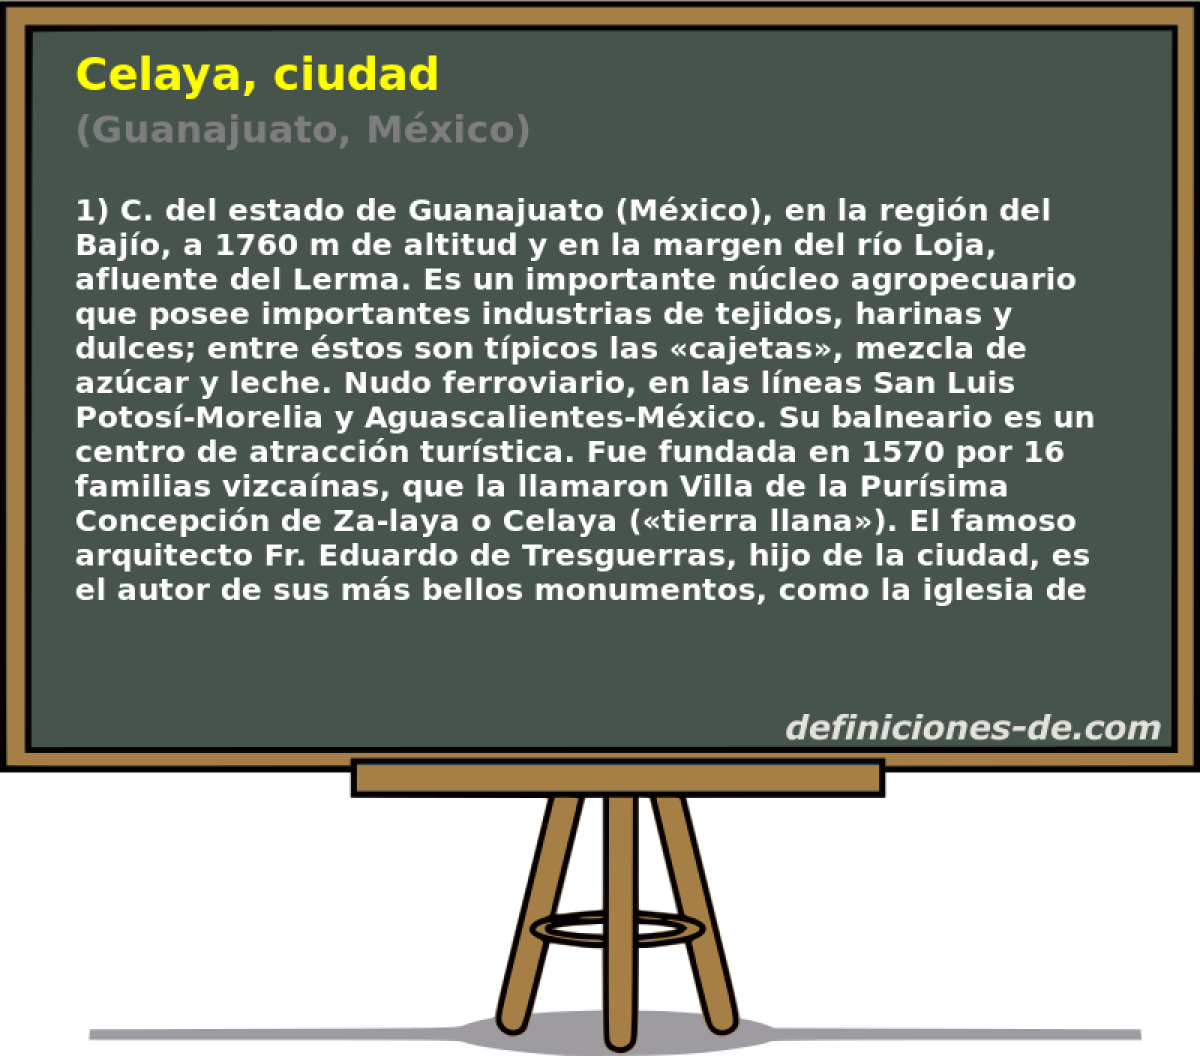 Celaya, ciudad (Guanajuato, Mxico)